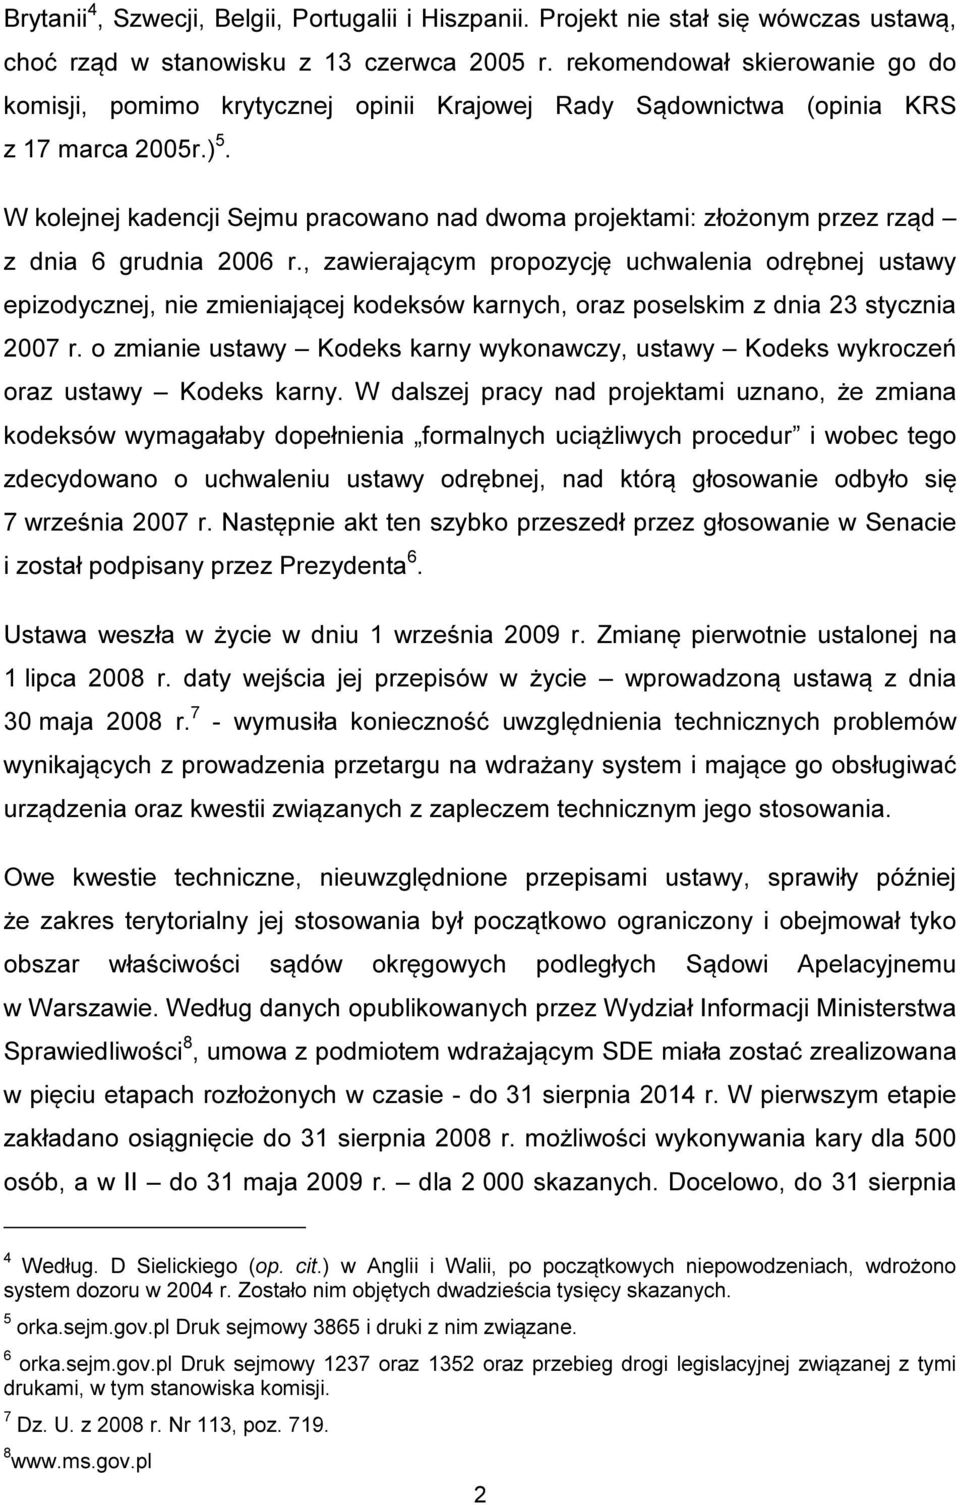 W kolejnej kadencji Sejmu pracowano nad dwoma projektami: złożonym przez rząd z dnia 6 grudnia 2006 r.